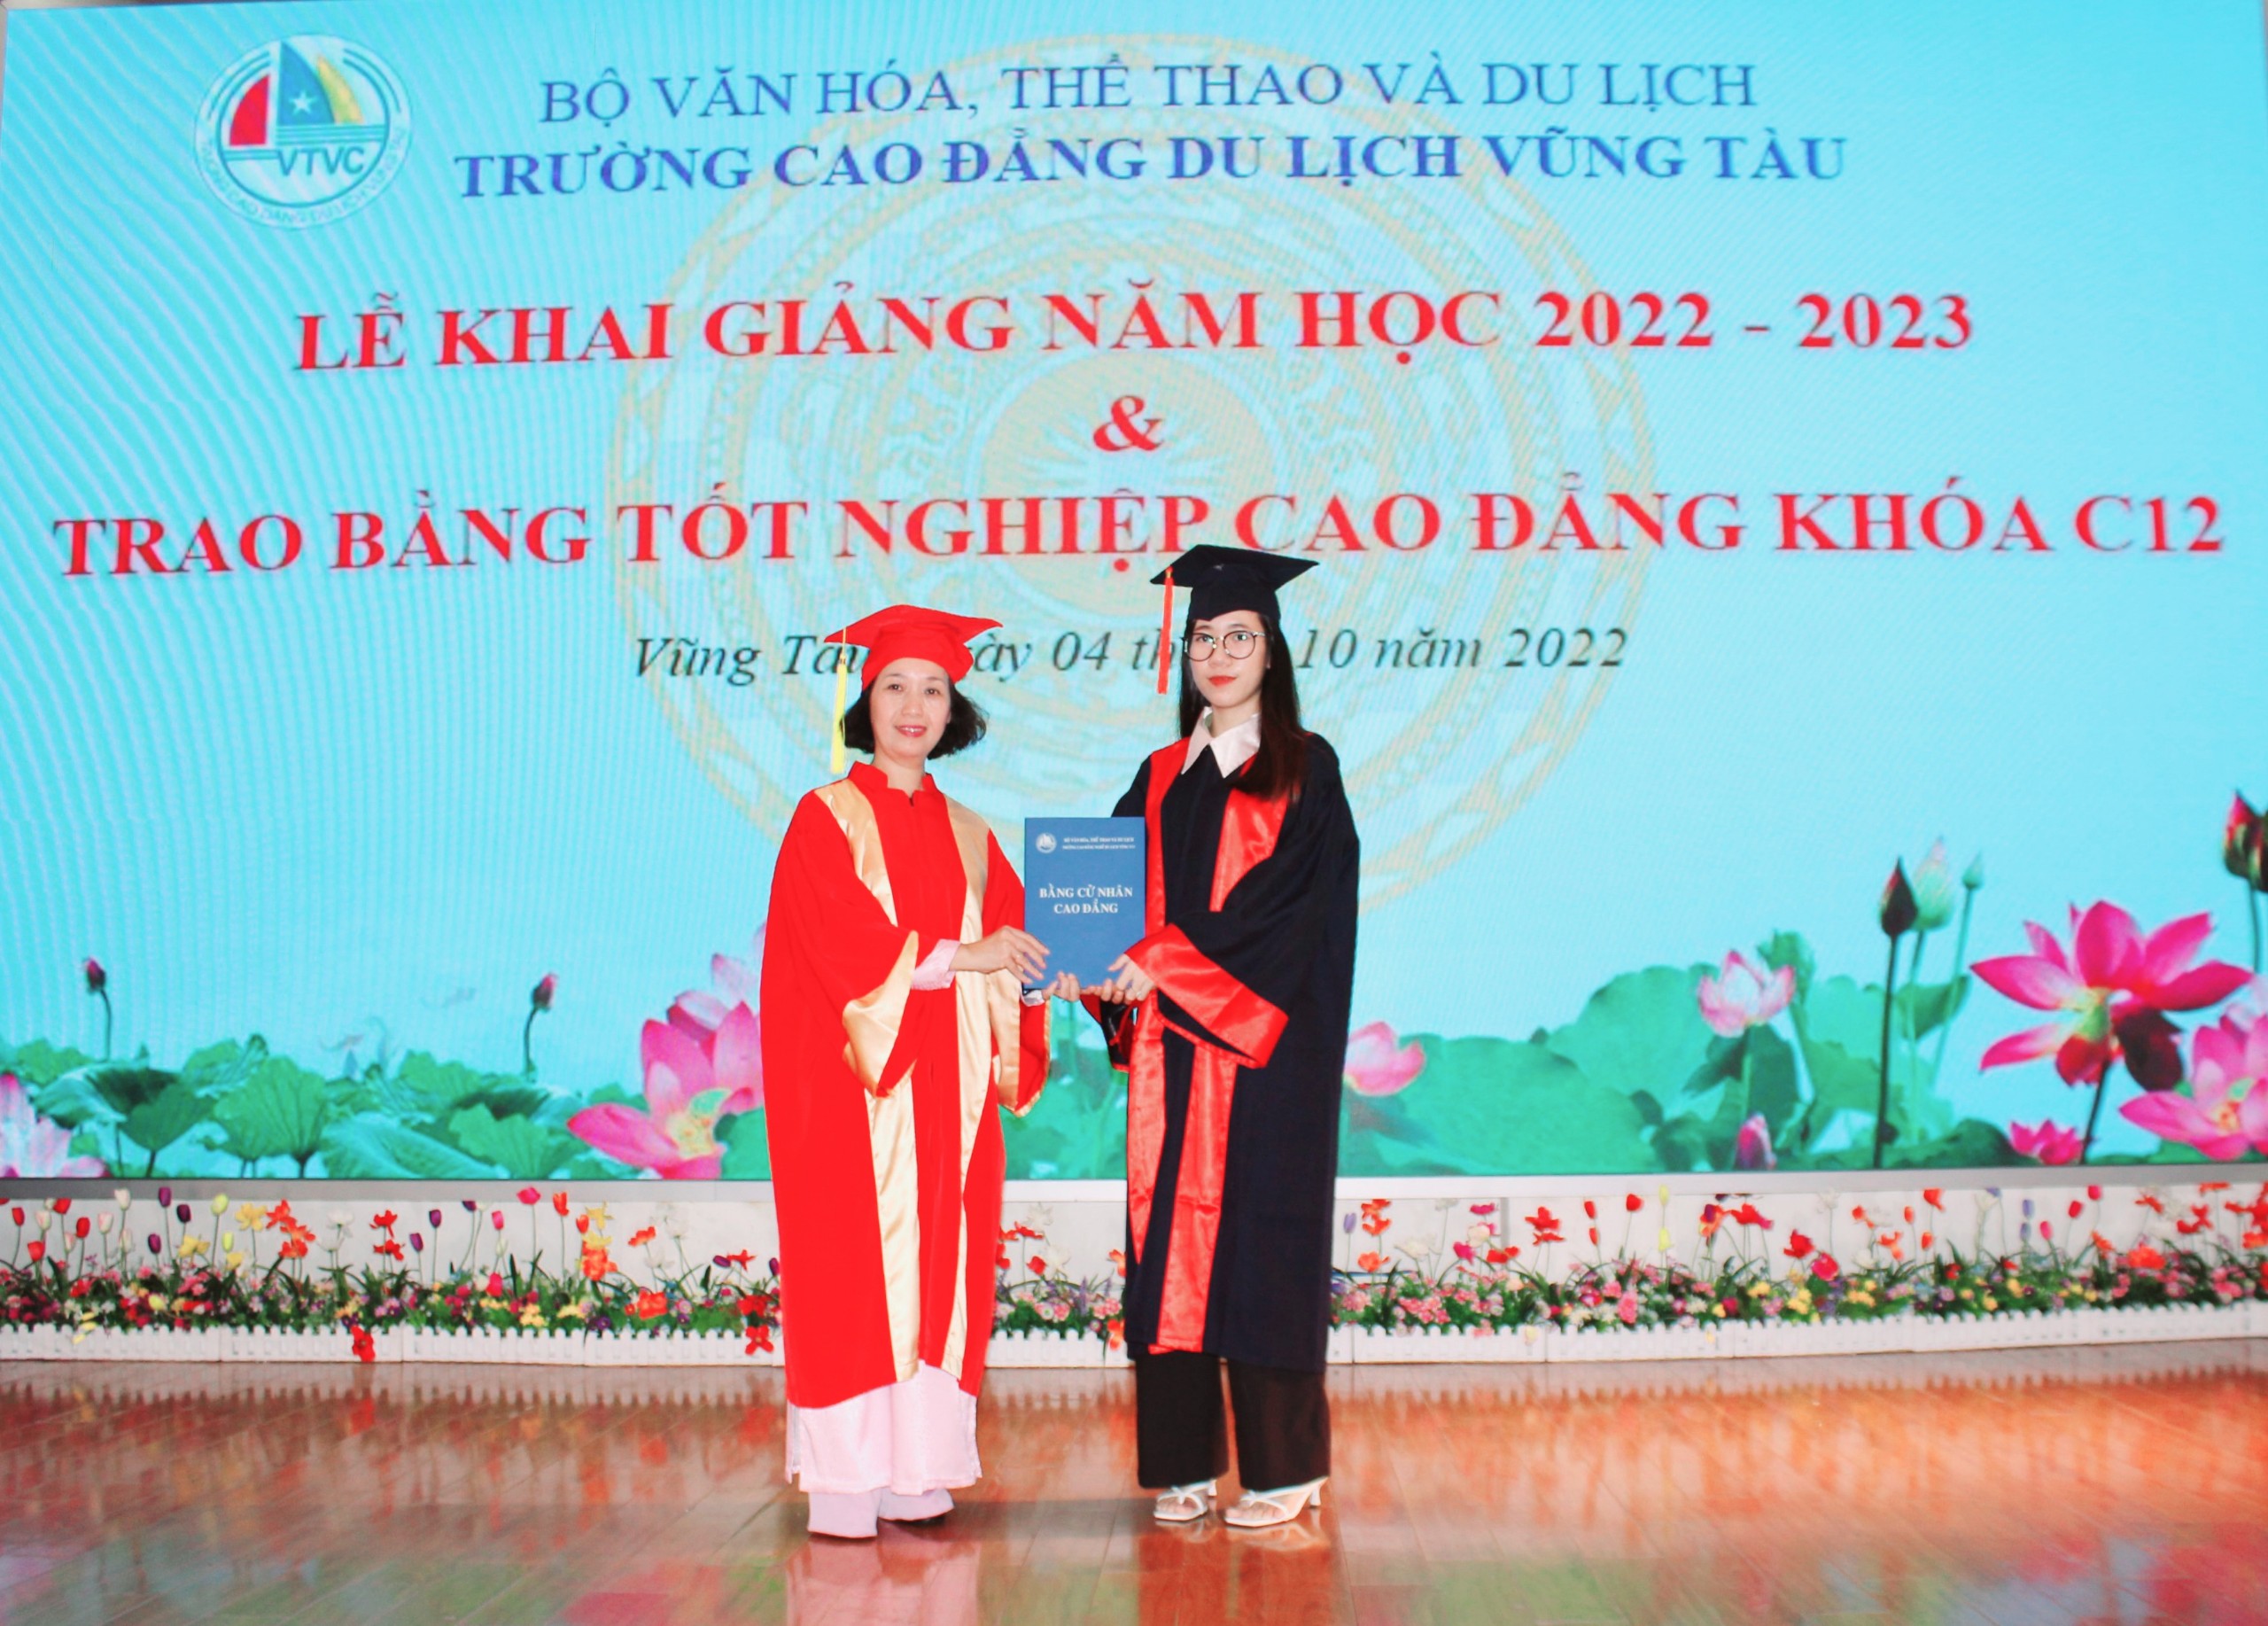 Bà Đinh Bích Diệp, Hiệu trưởng nhà trường trao bằng tốt nghiệp cho sinh viên Cao đẳng khóa 12.